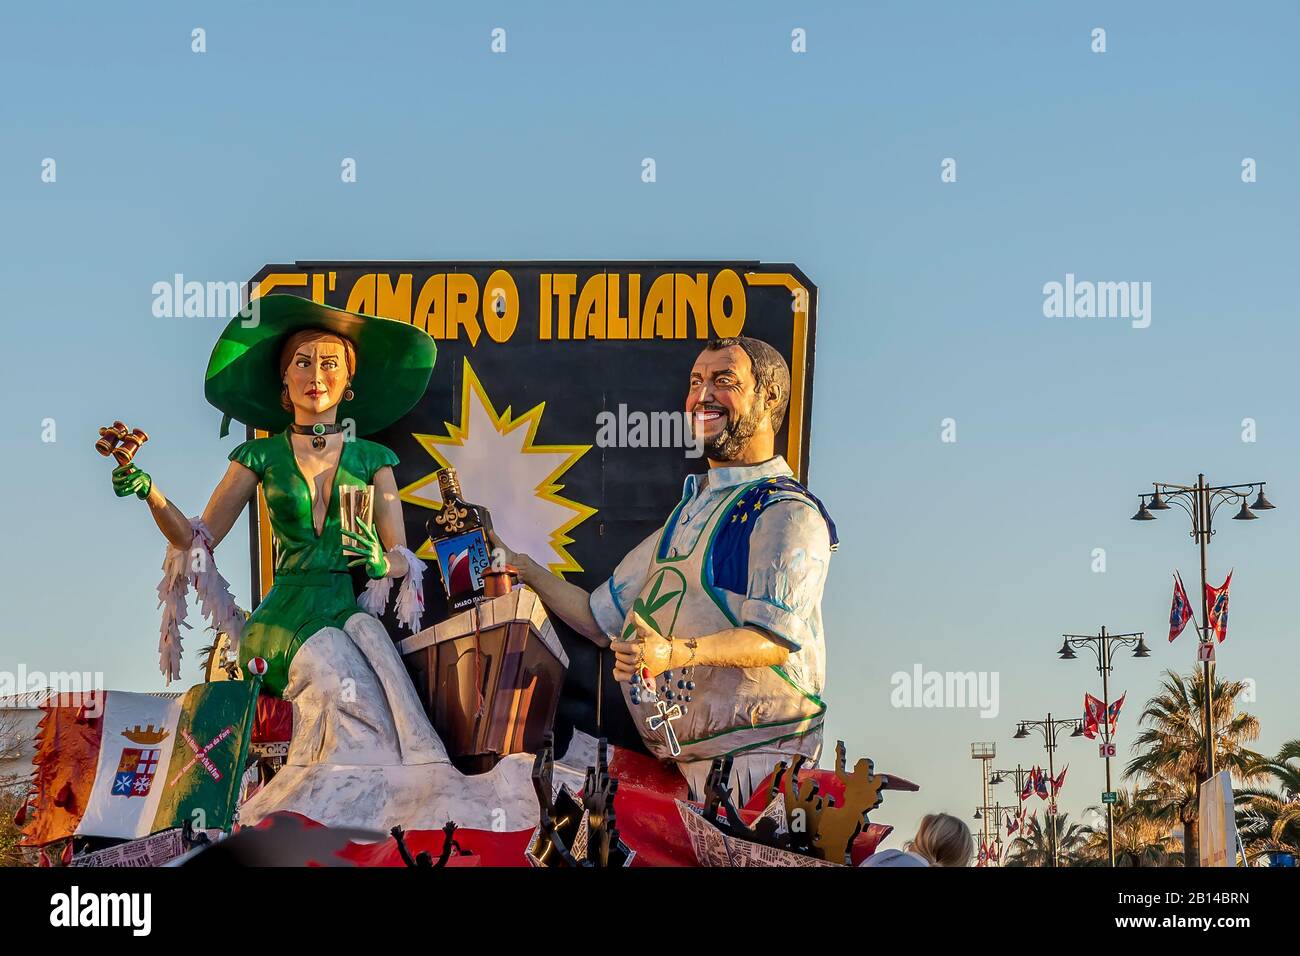 Die allegorische Floskel namens "L'amaro italiano - Die italienischen Bitterparaden" im traditionellen Karneval von Viareggio, Italien Stockfoto